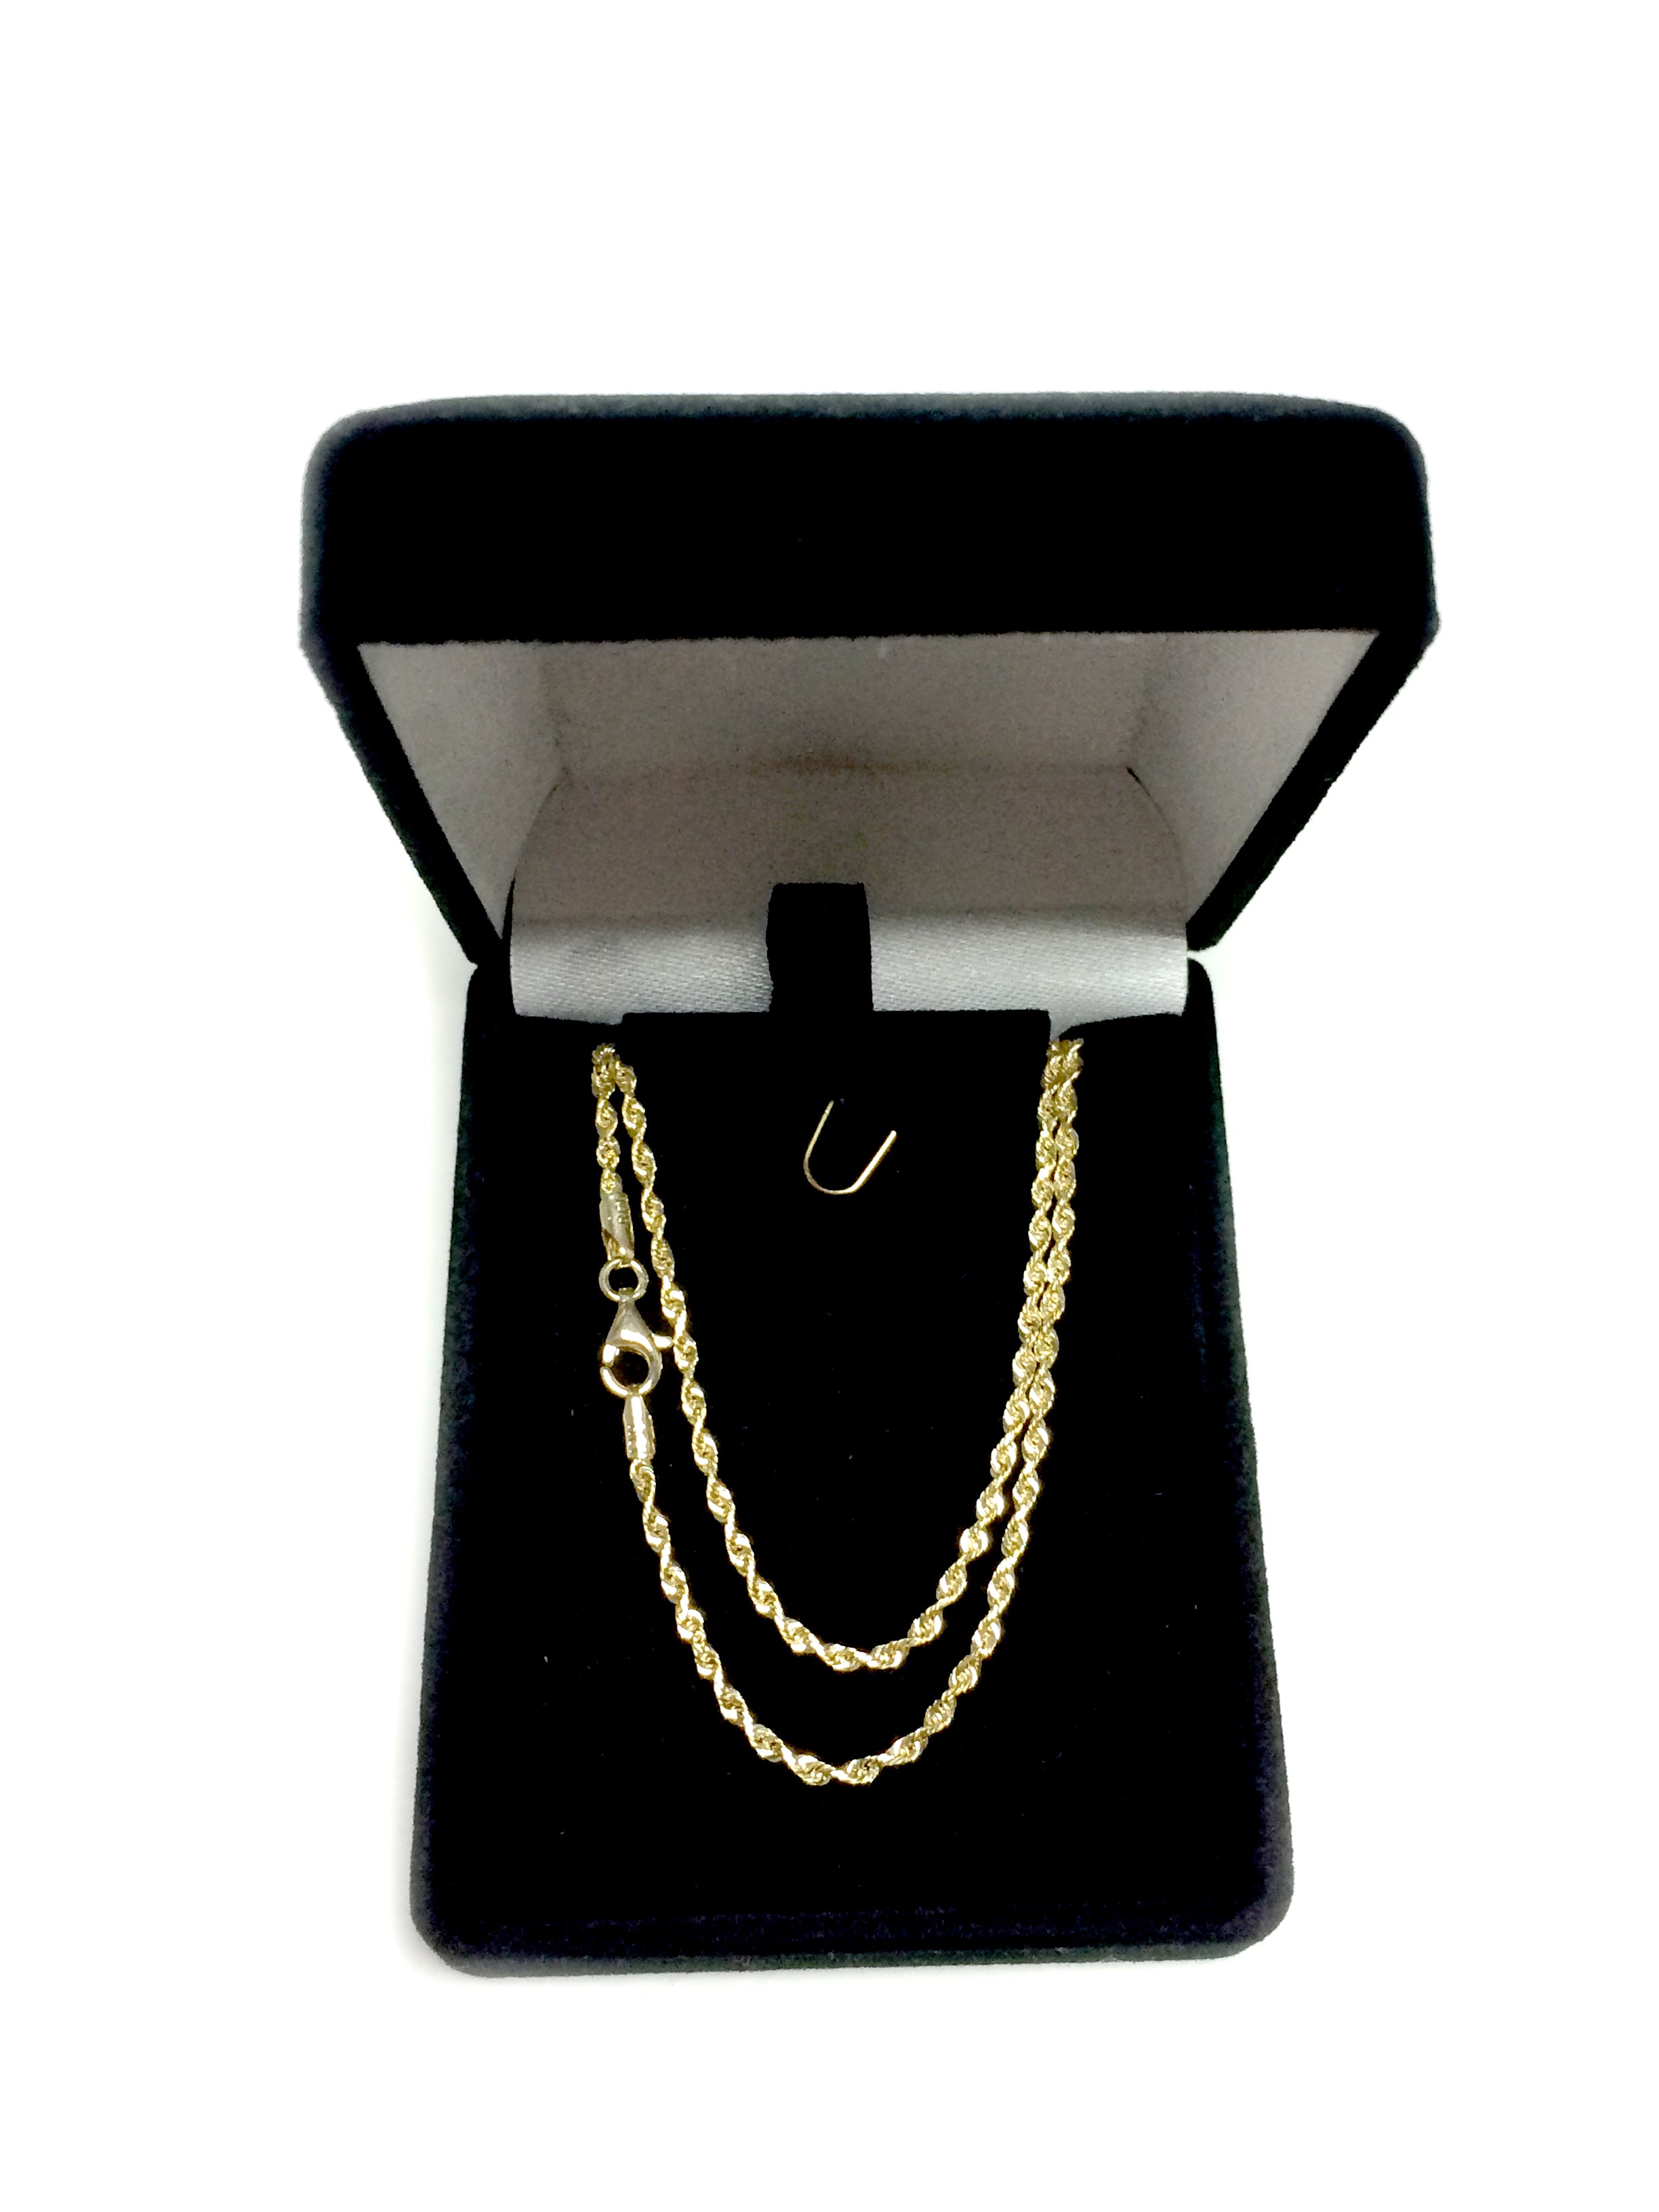 Collana a catena in corda con taglio a diamante in oro giallo massiccio 14k, gioielleria di alta qualità da 2,0 mm per uomo e donna